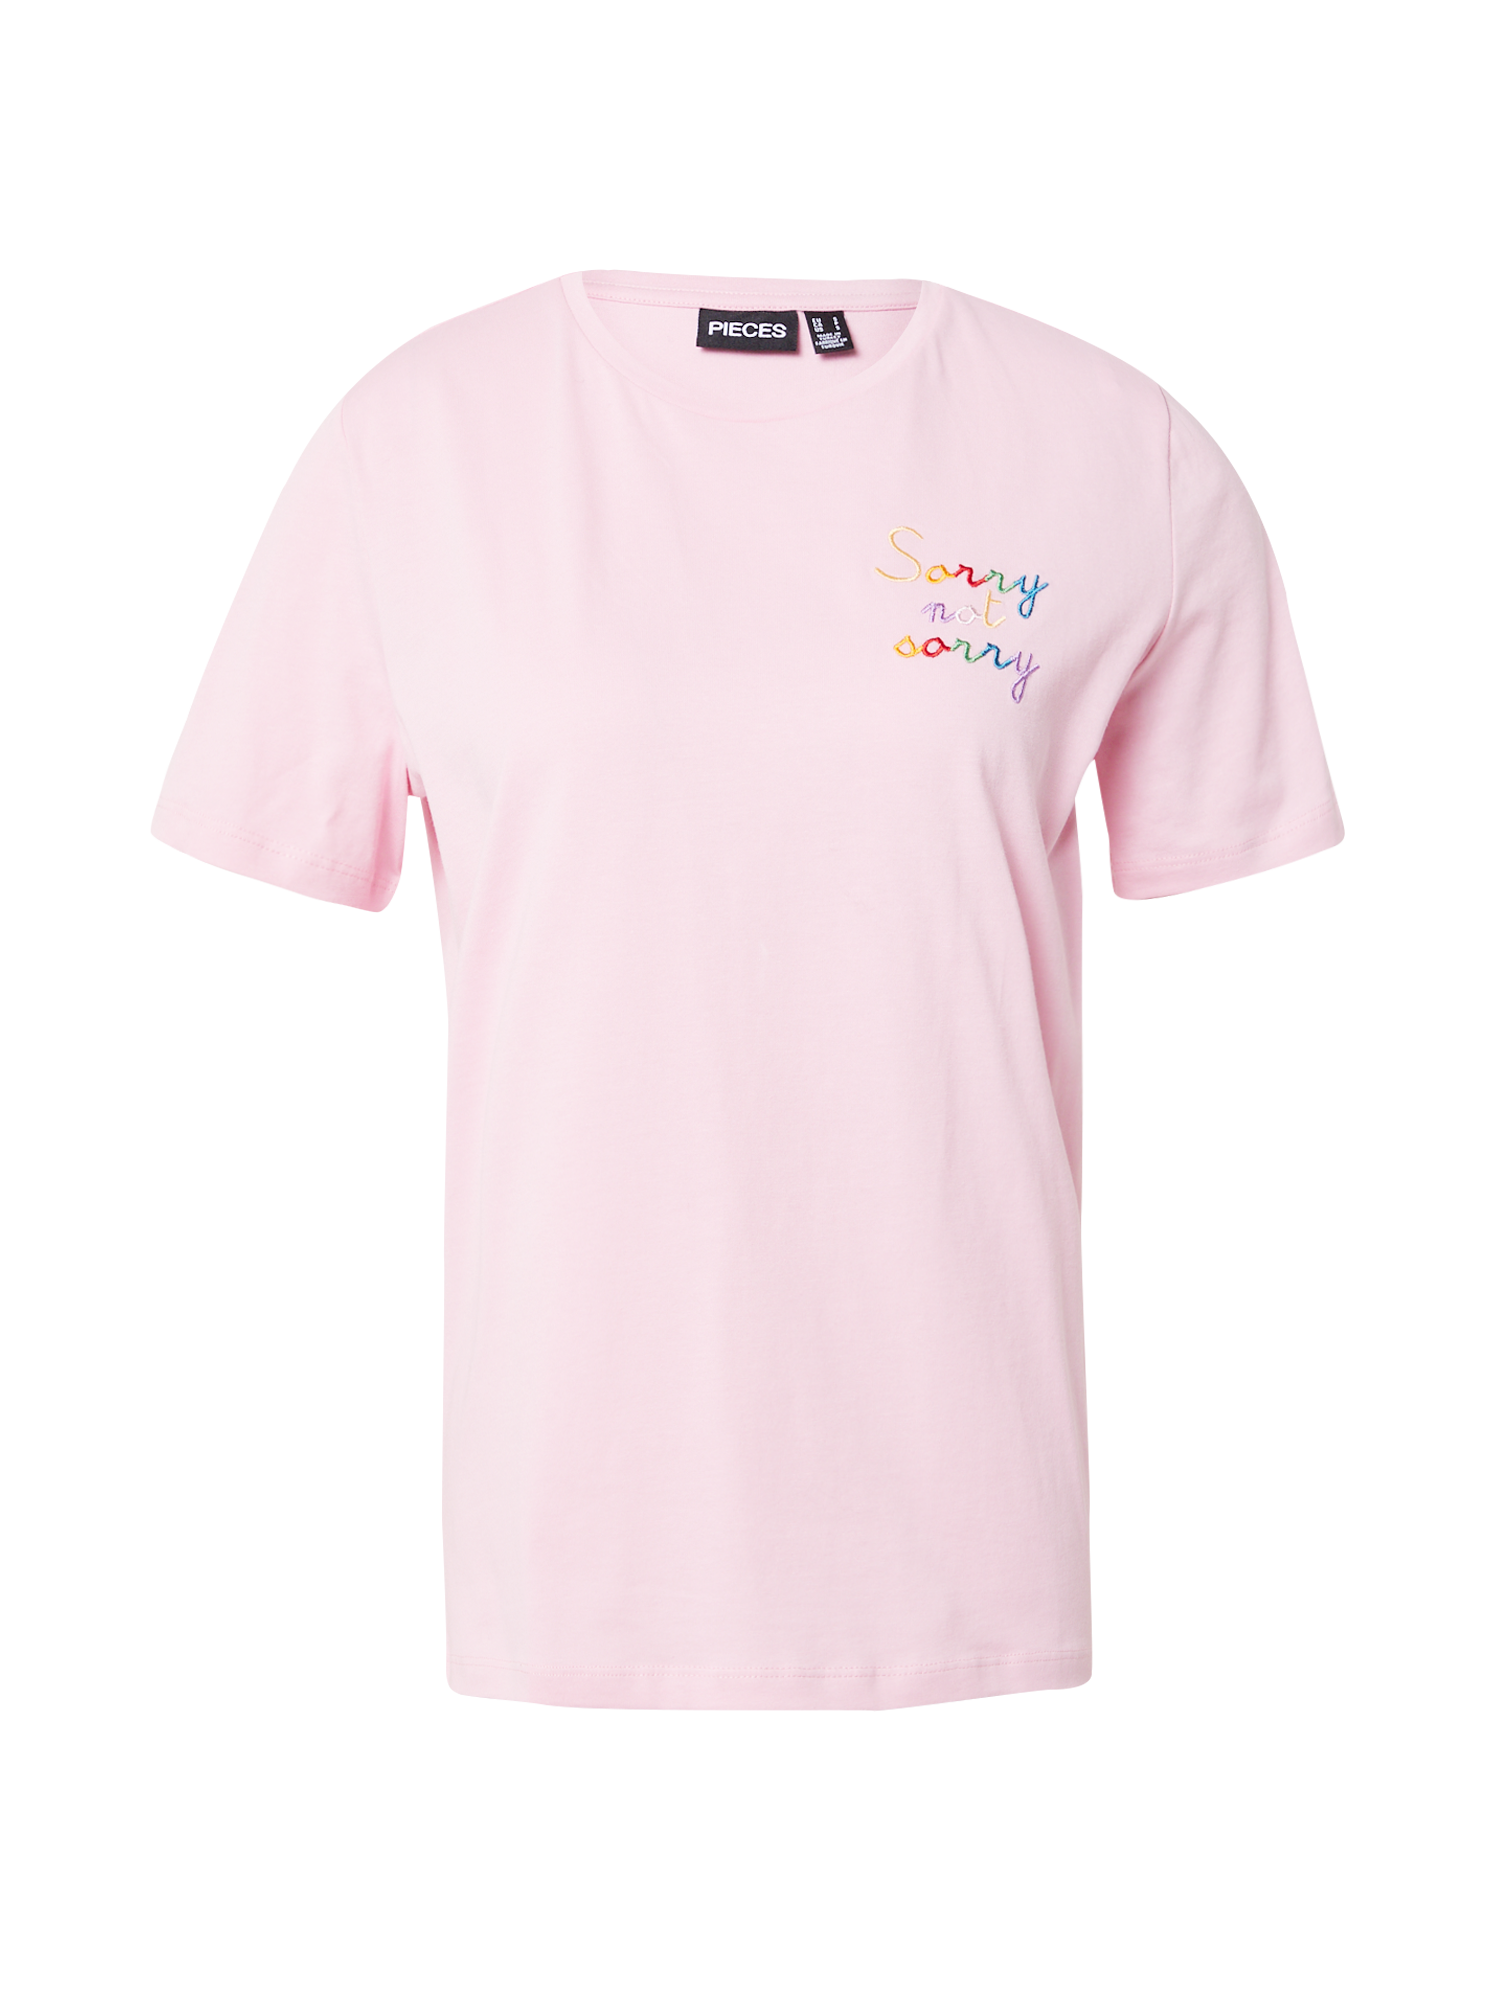 PIECES Koszulka JOLLY w kolorze Różowym 